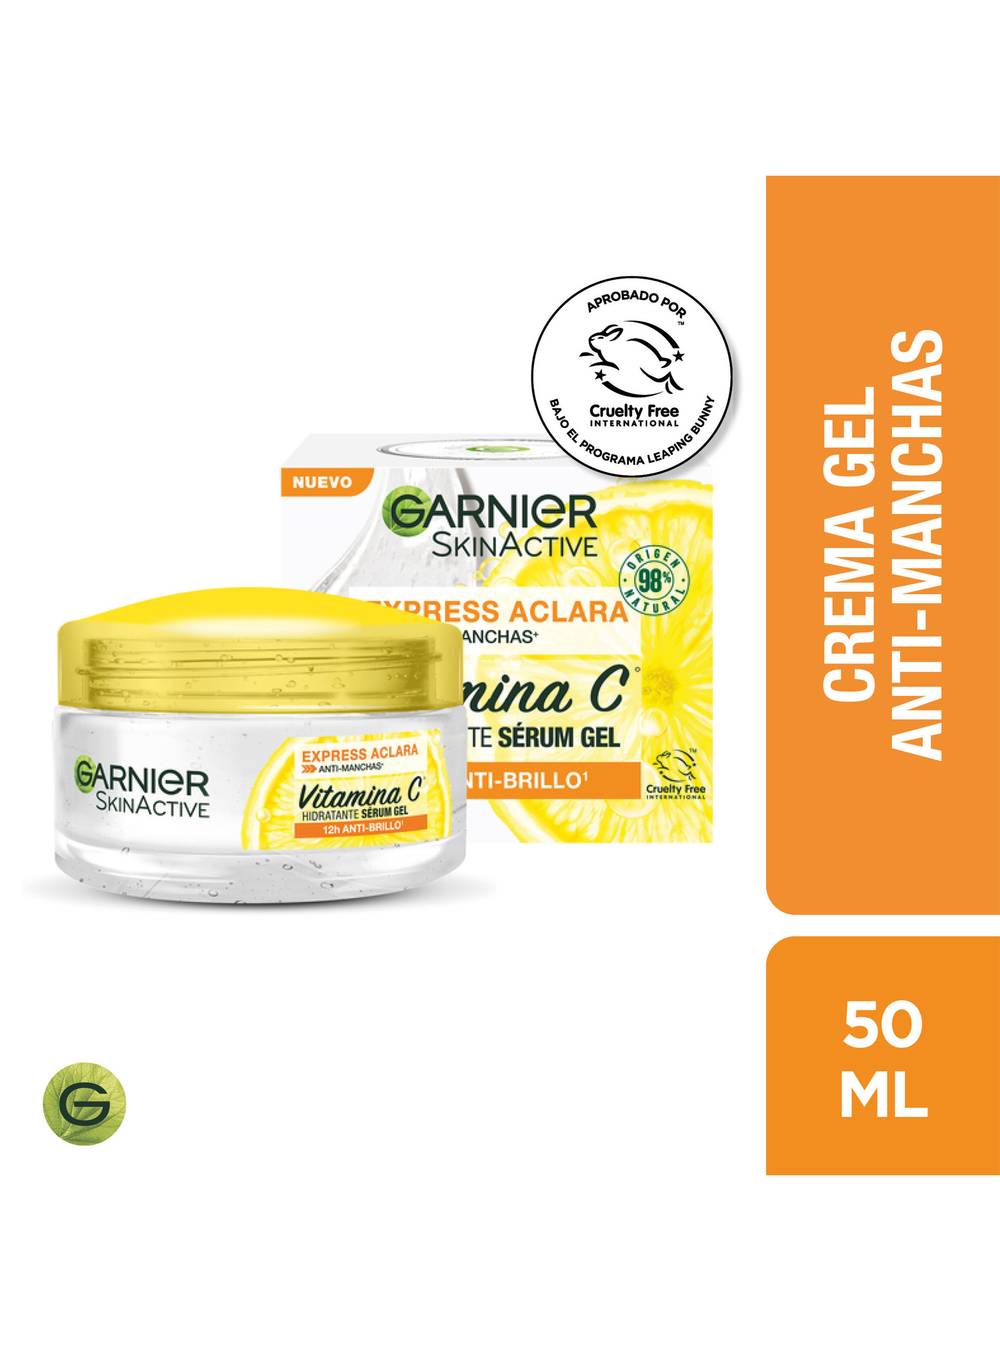 Garnier crema gel hidratante express aclara (pote 50 ml)